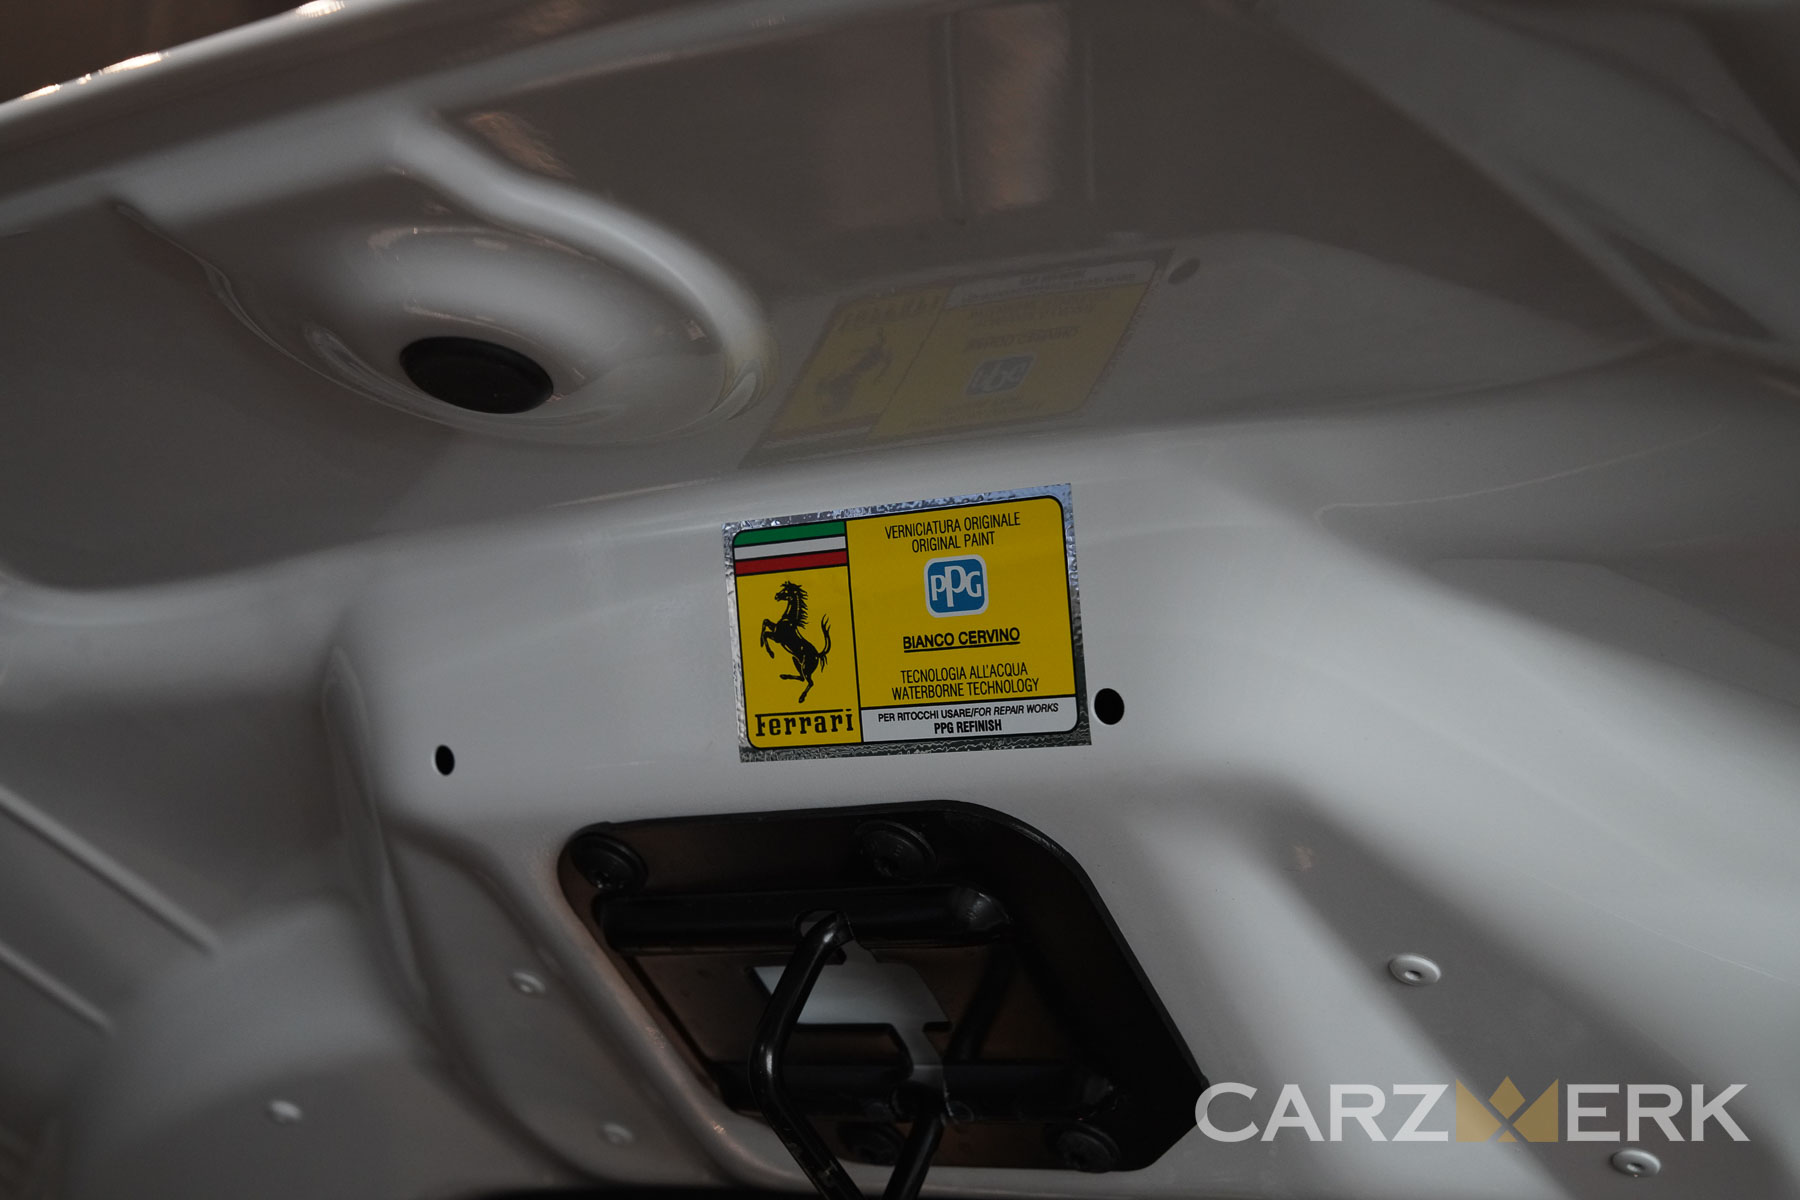 2022 Ferrari 812 Competizione - Bianco Cervino - PPG Paint Sticker